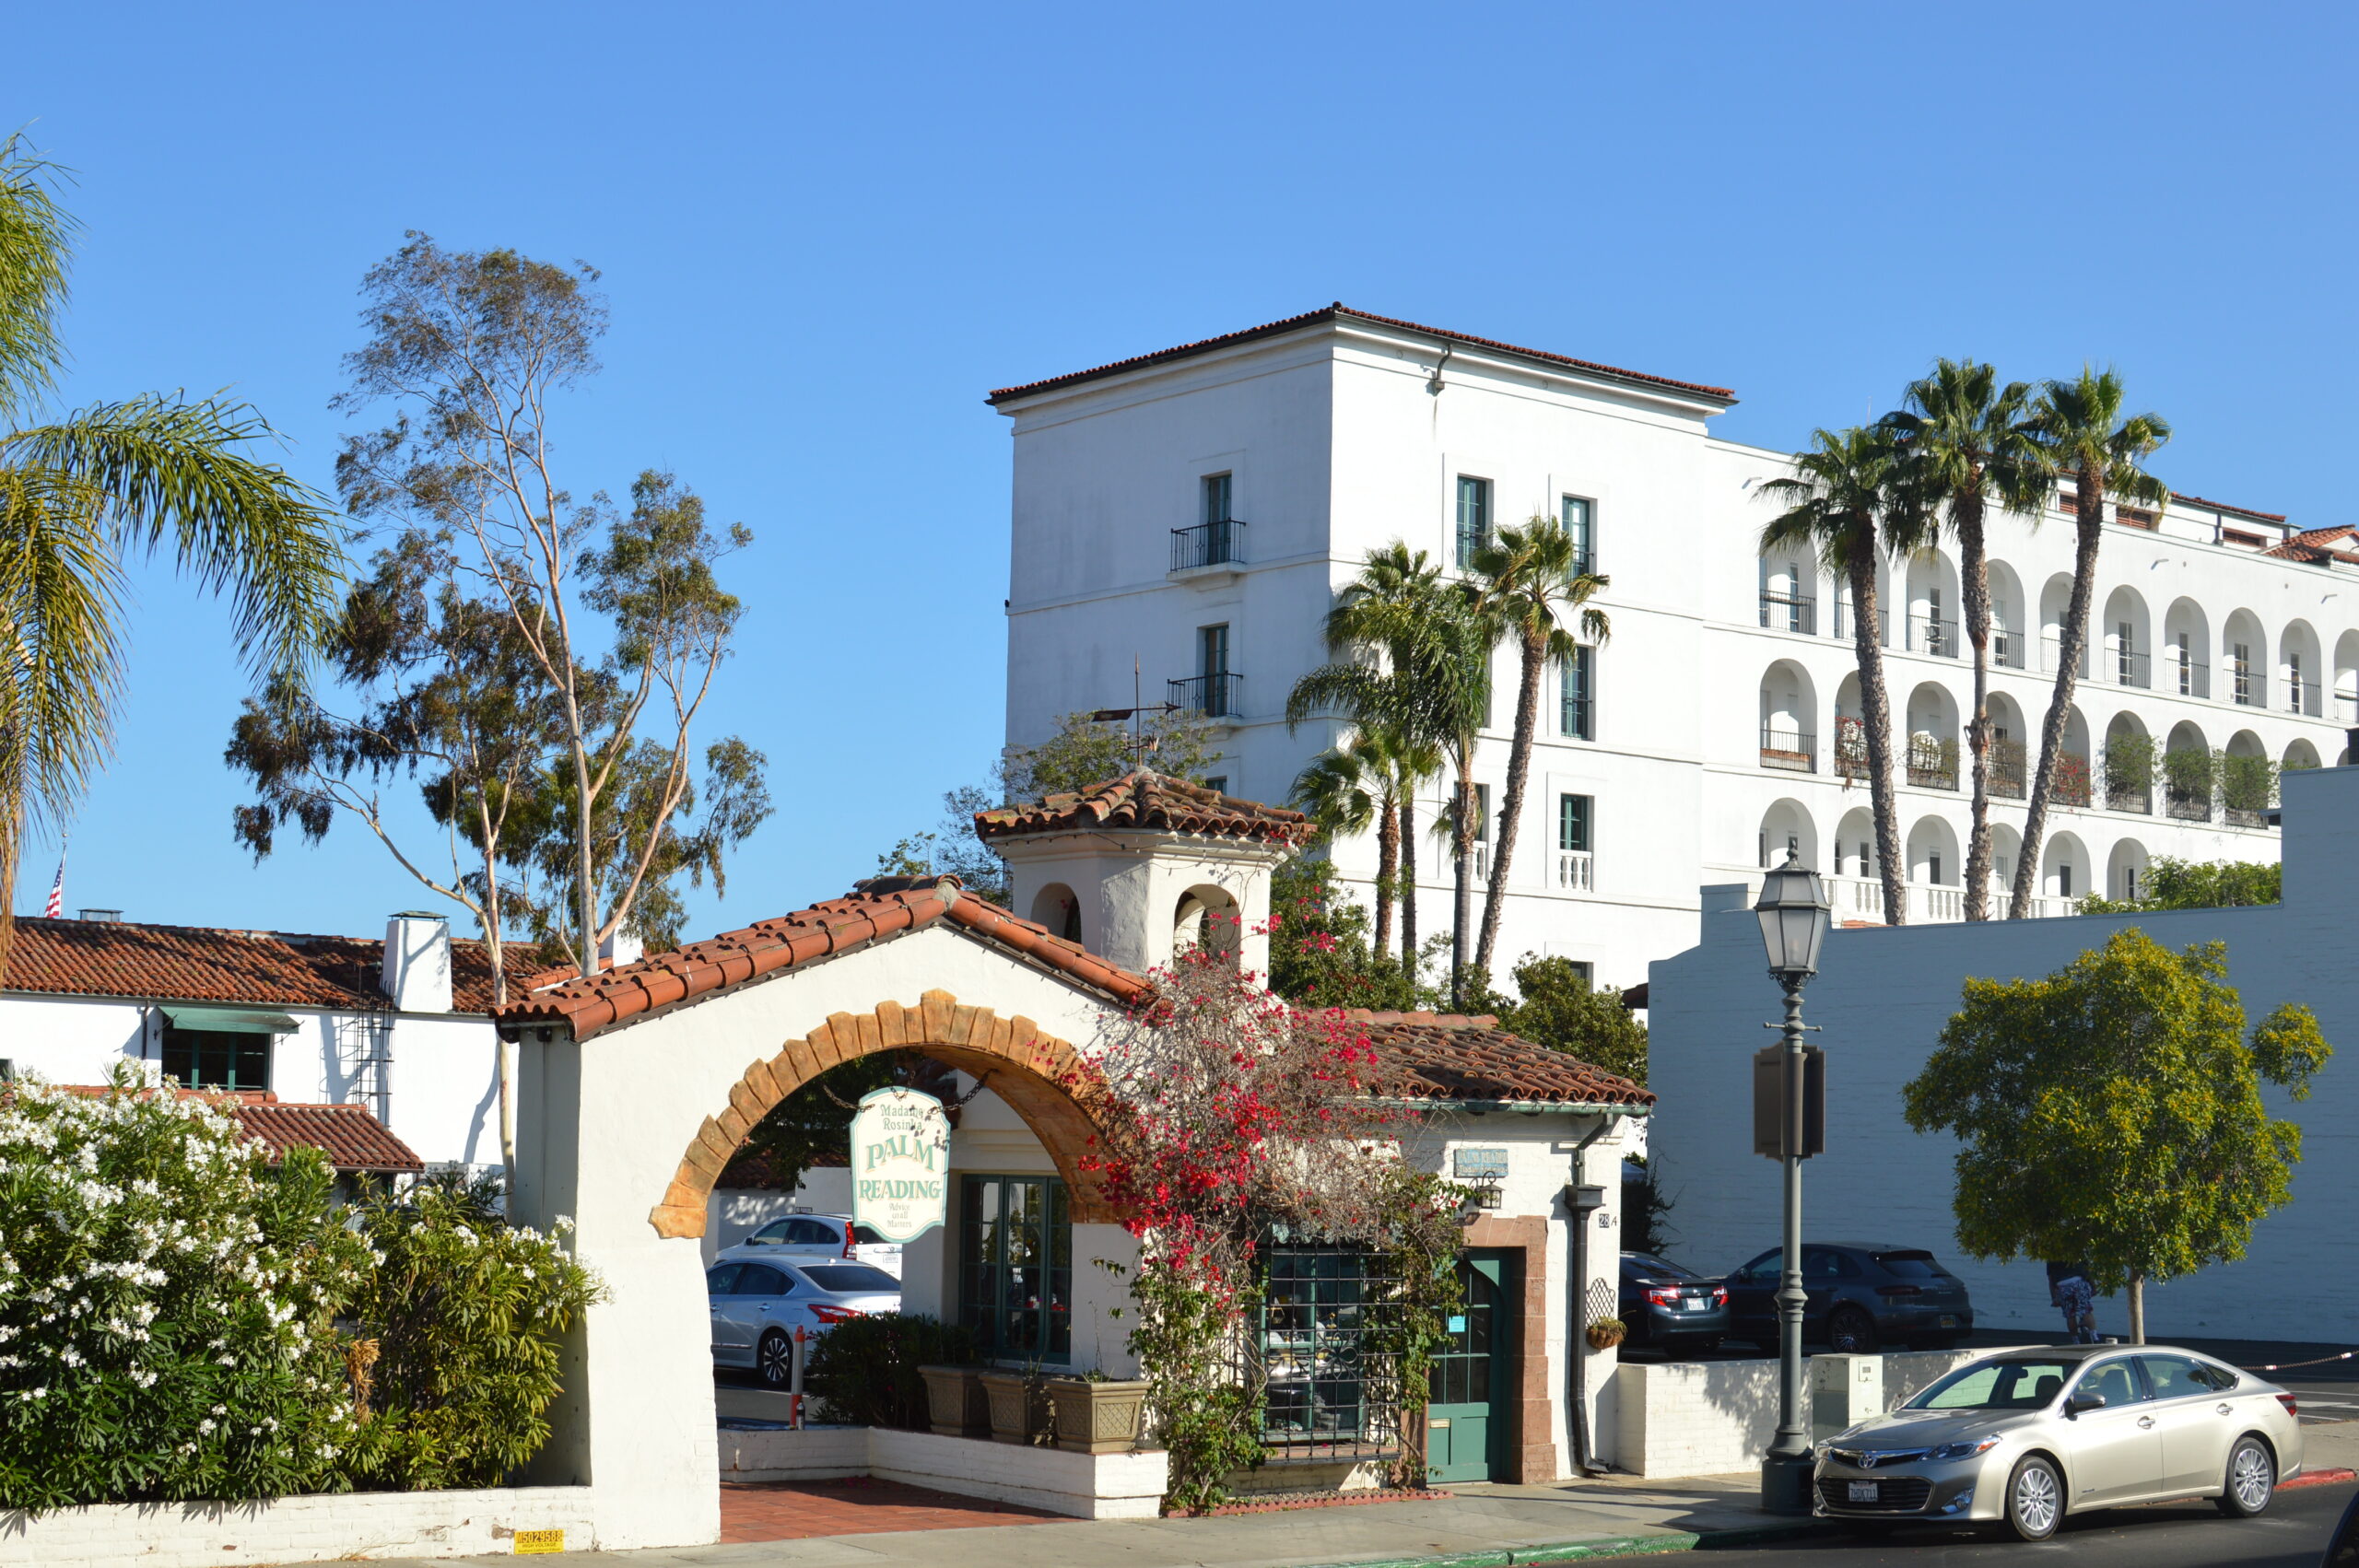 Buildings in downtown Santa Barbara California